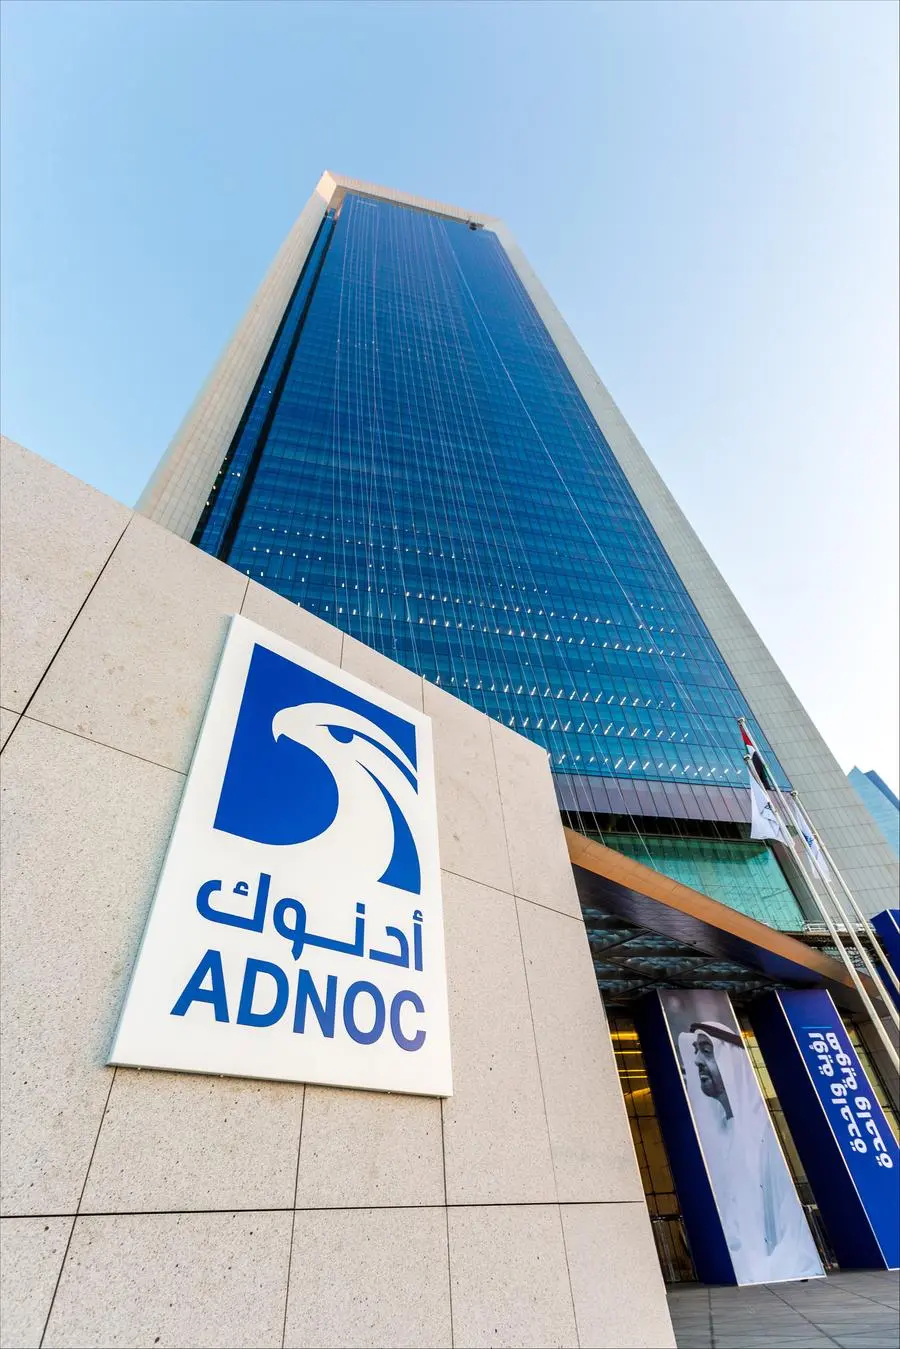 بيان صحفي: \"أدنوك\" الإماراتية توقع اتفاقيات مع أكثر من 60 شركة محلية وعالمية للاستفادة من فرص تصنيع محلية